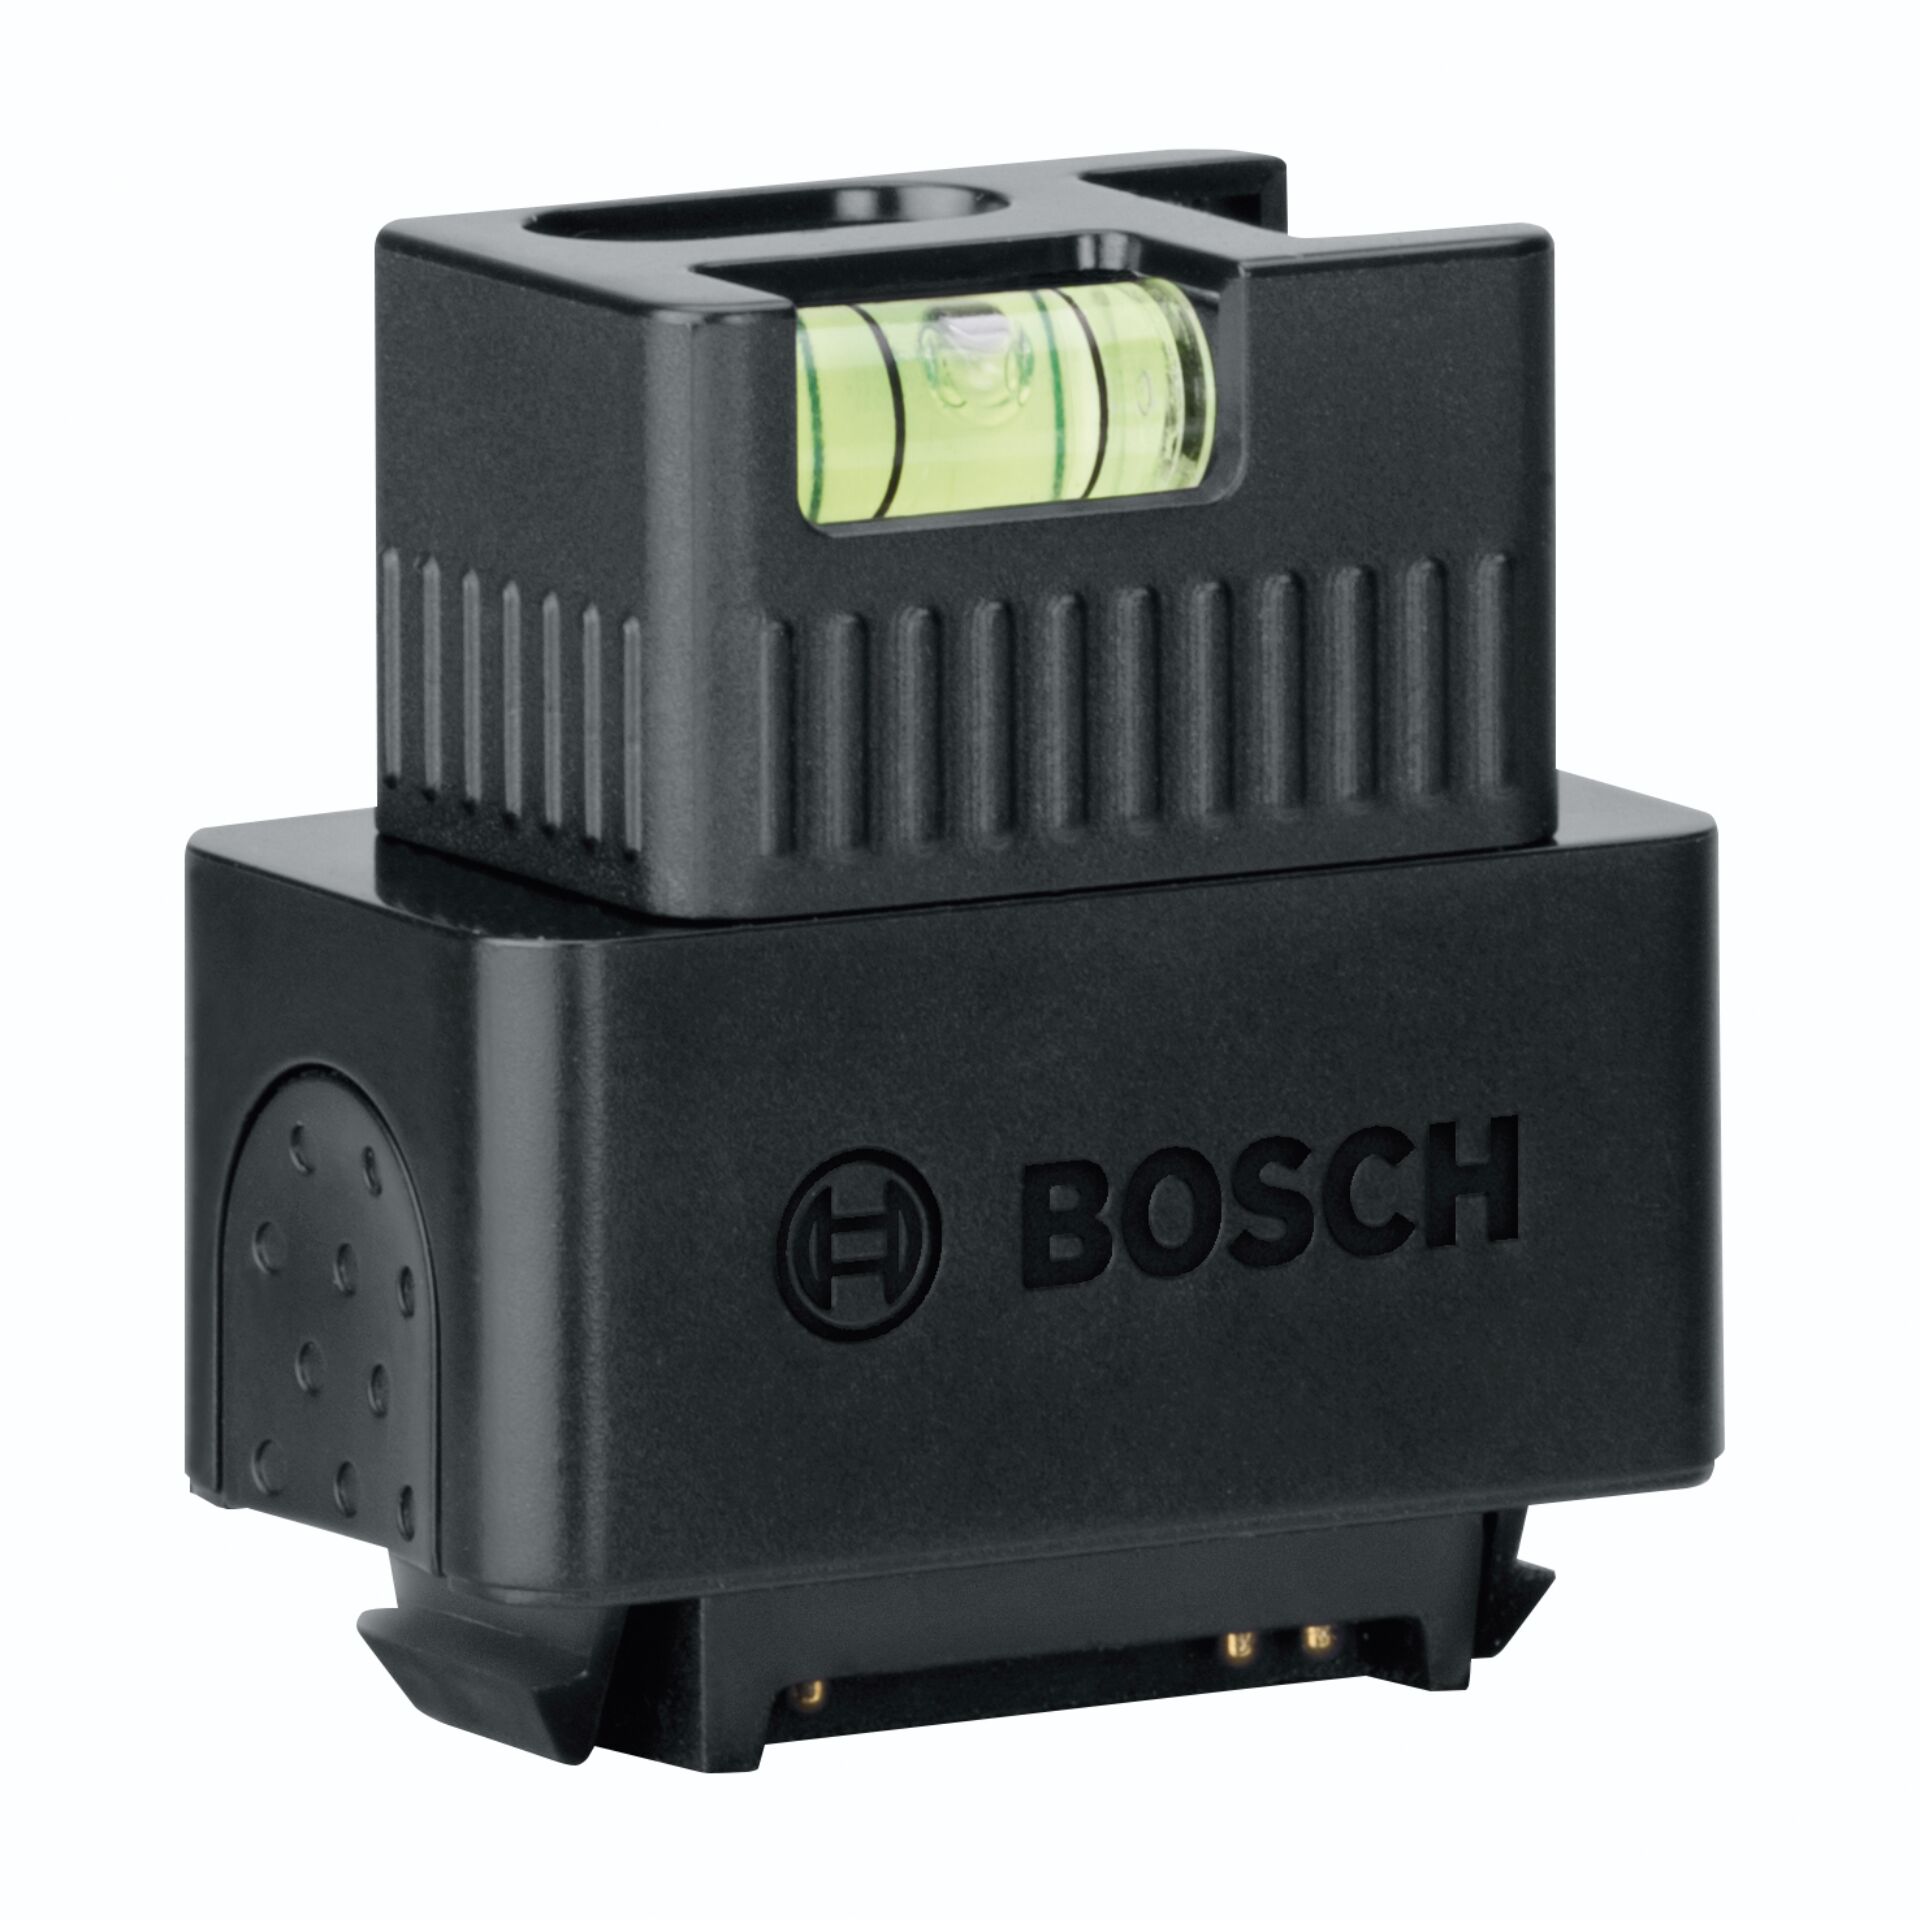 Bosch Zamo III adatt. laser